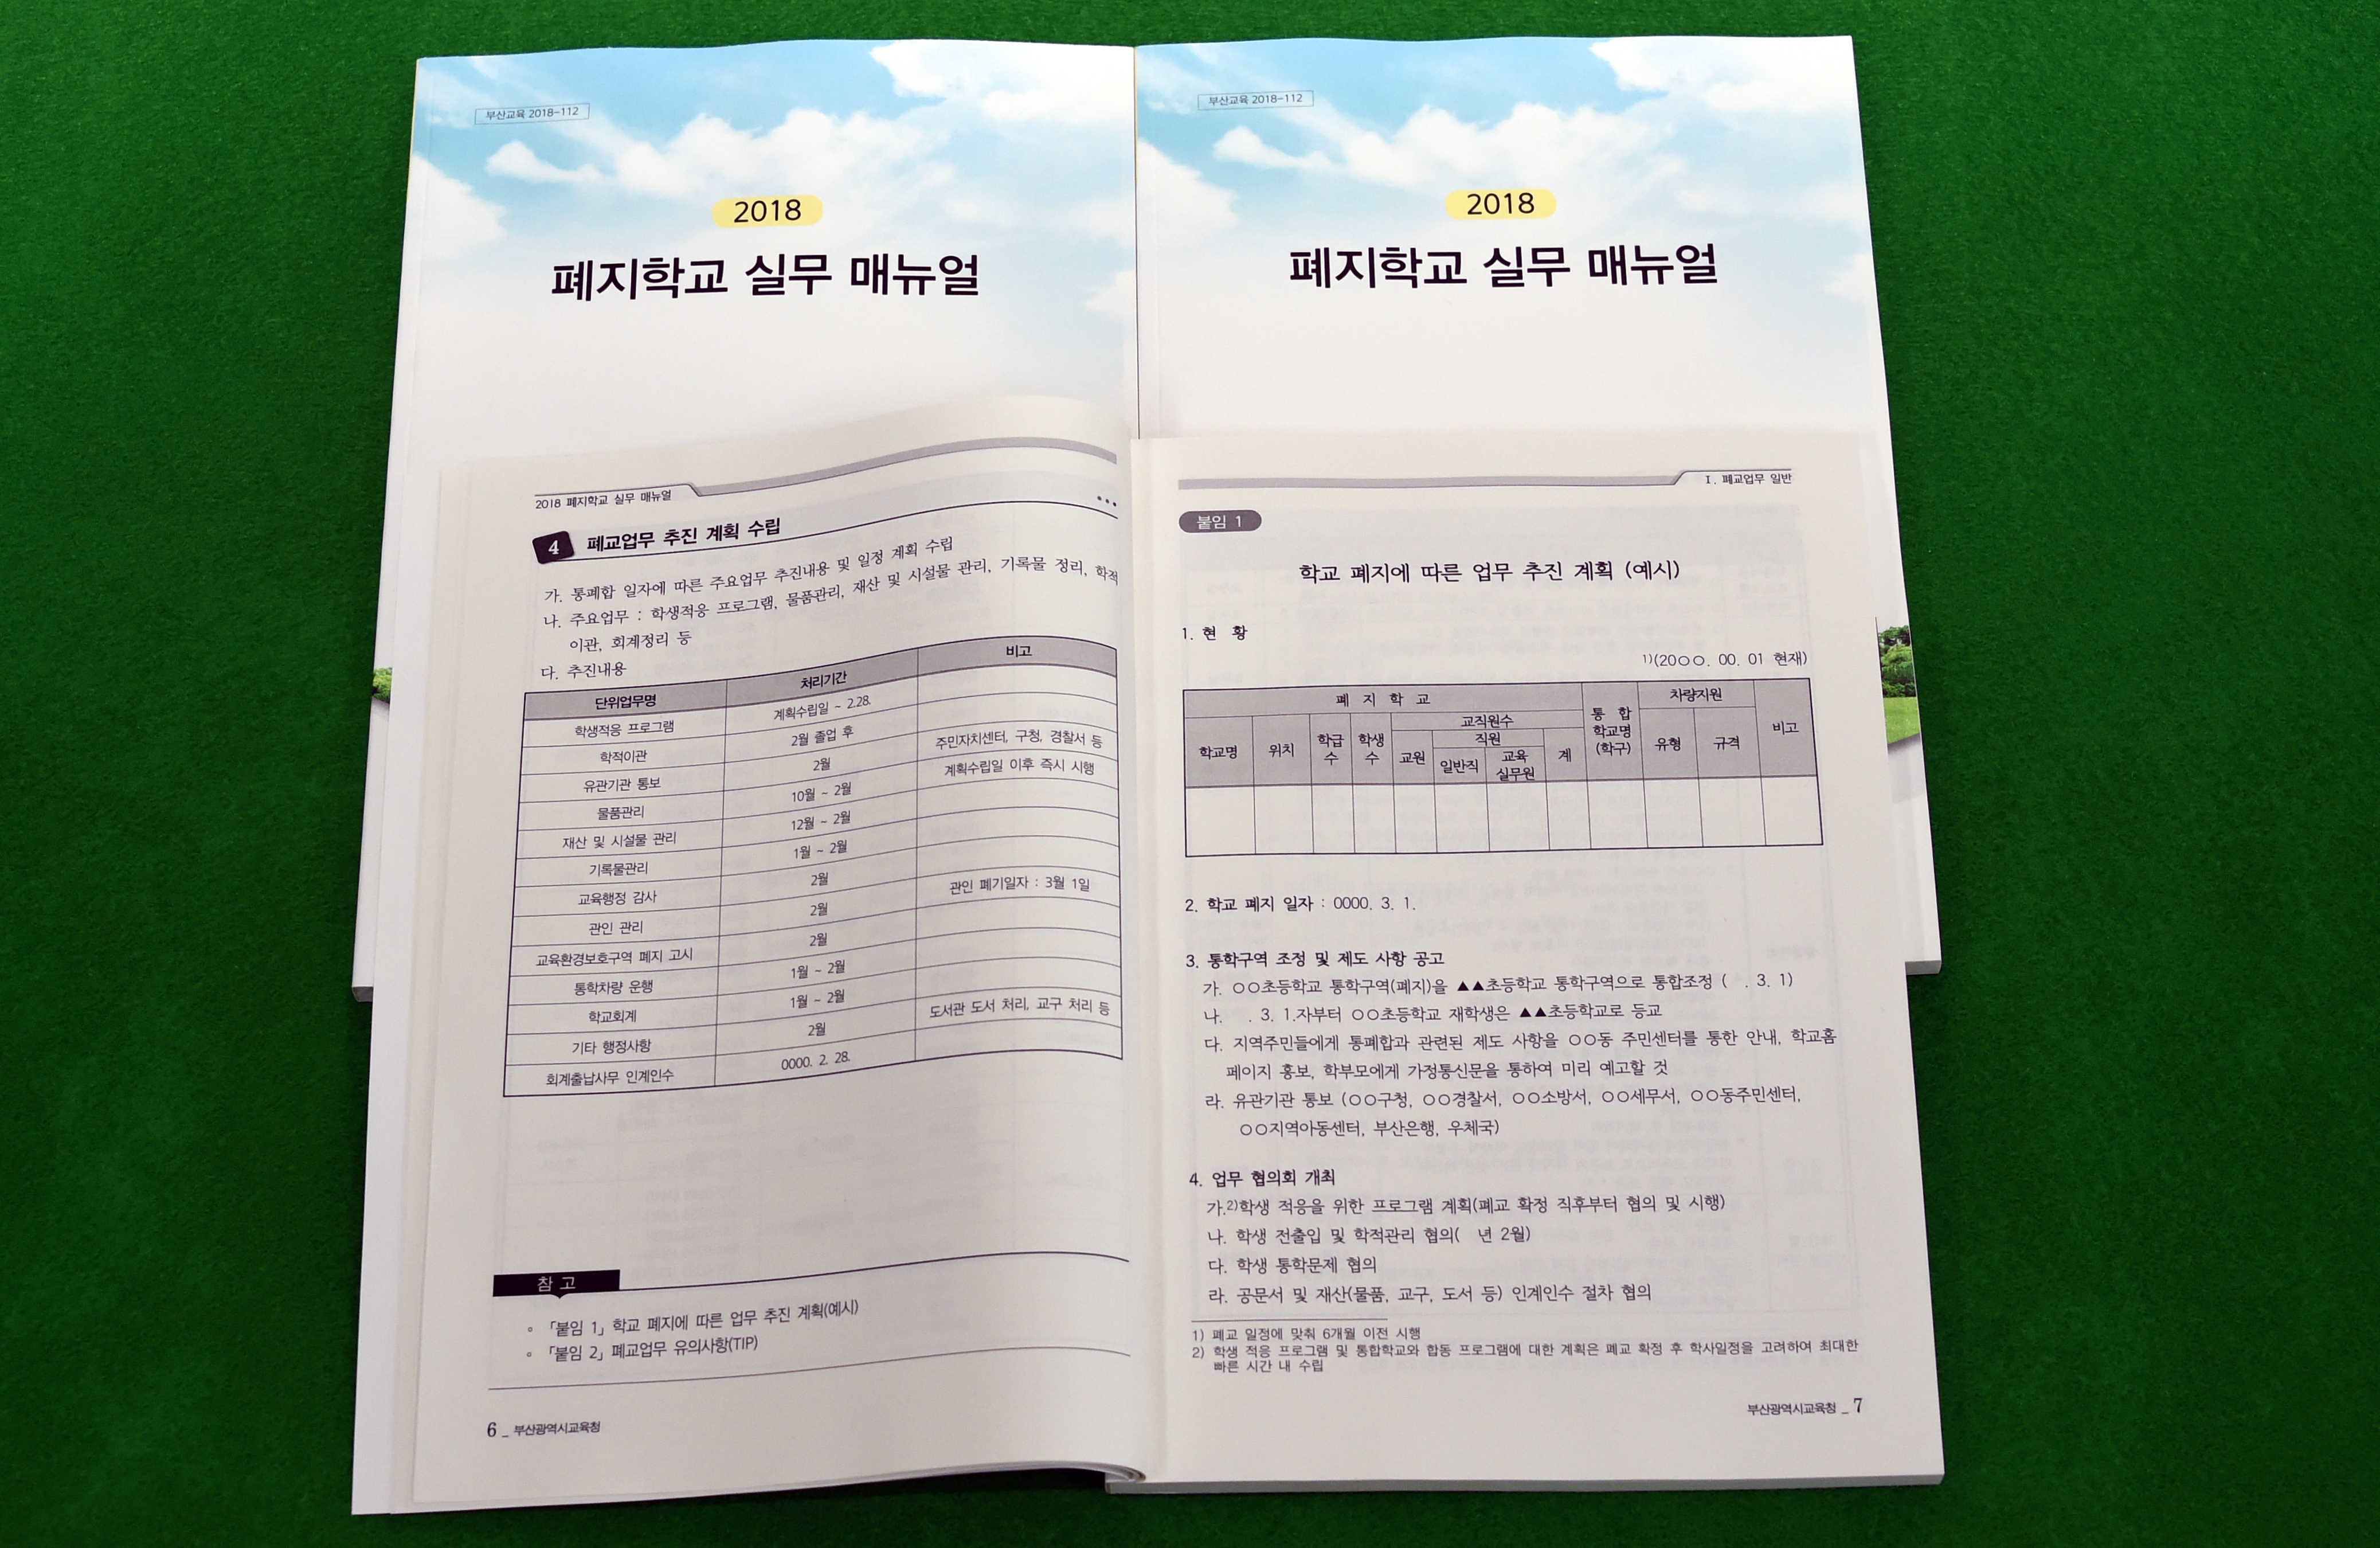 부산시교육청은 폐지학교 실무 매뉴얼을 제작해 관련 학교 등에 보급했다고 17일 밝혔다.  <부산시교육청 제공> 